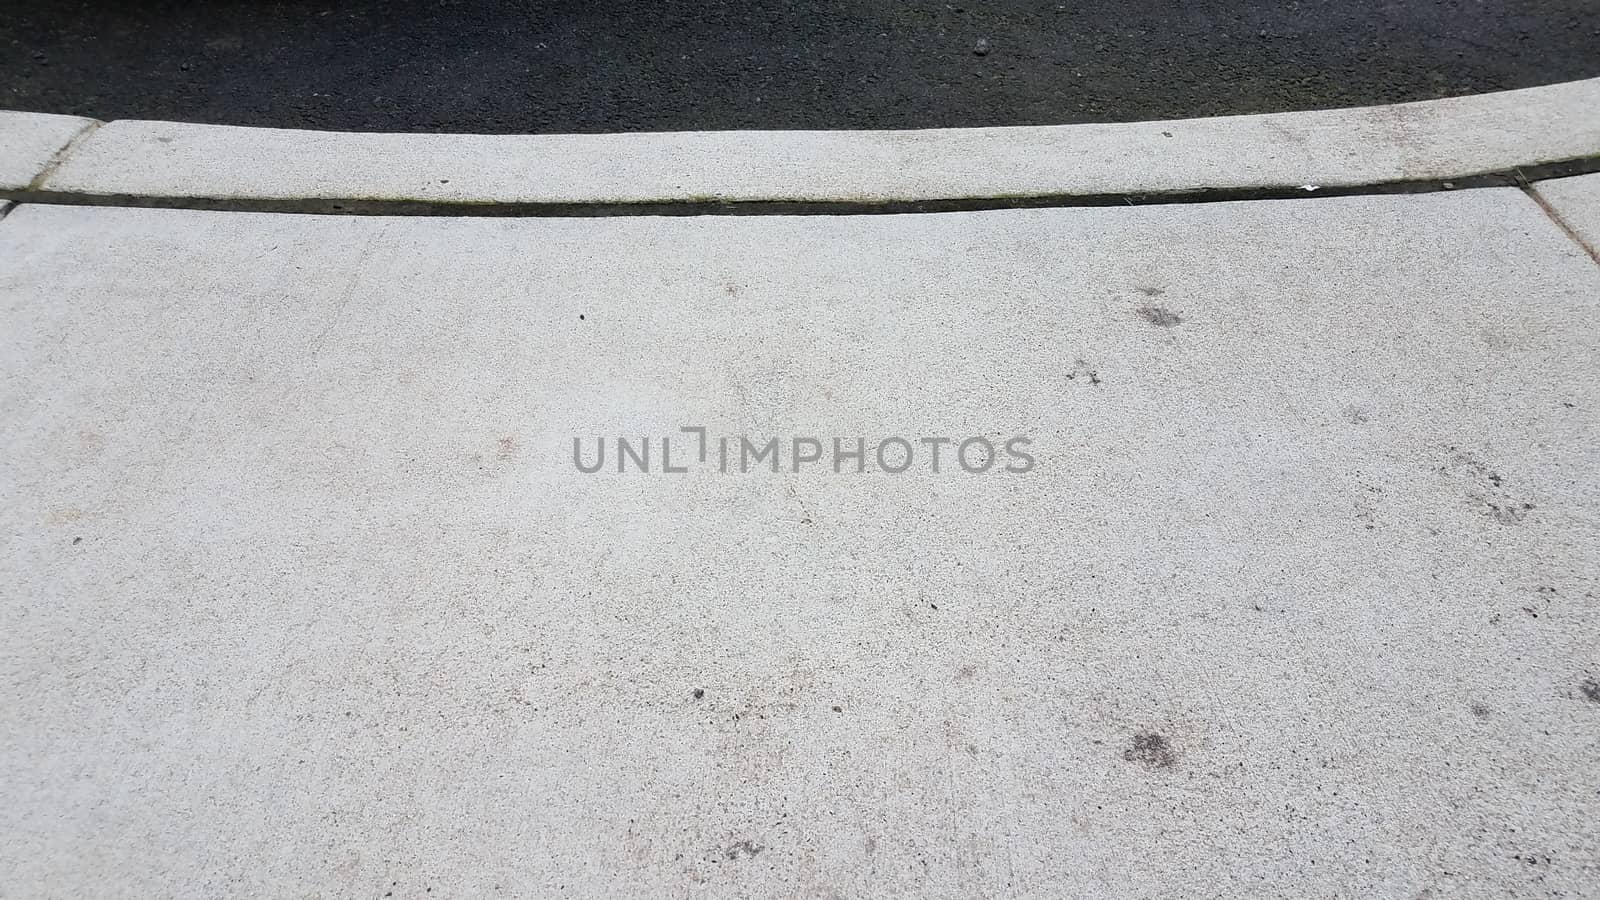 grey cement sidewalk and curb with asphalt or road